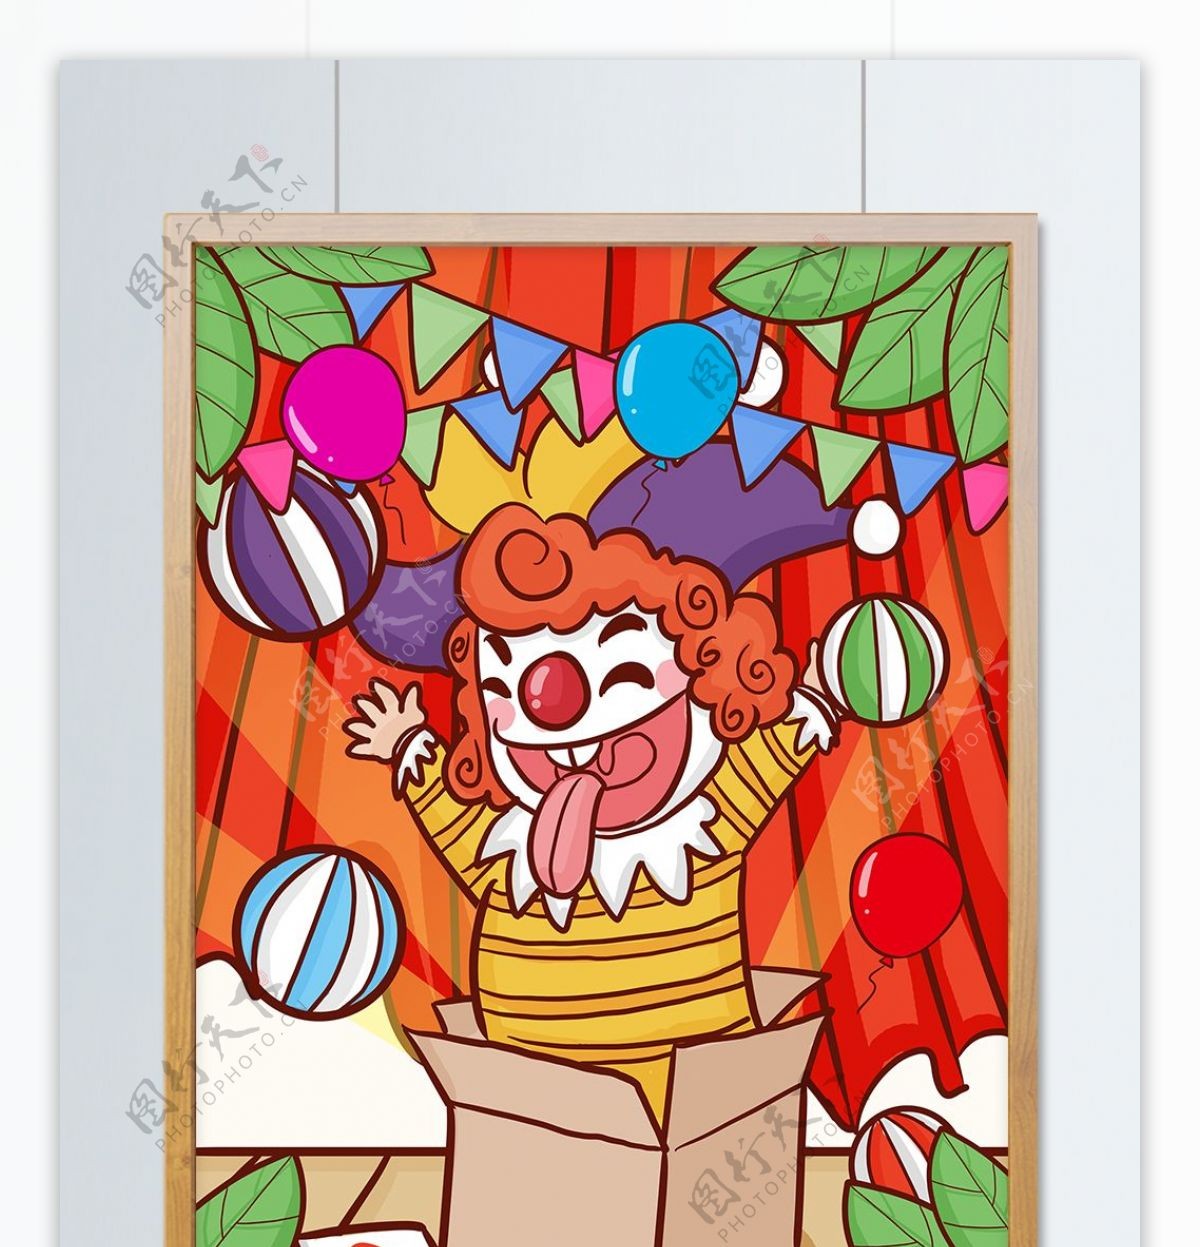 愚人节小丑表演逗笑大家开心逗乐手绘插画